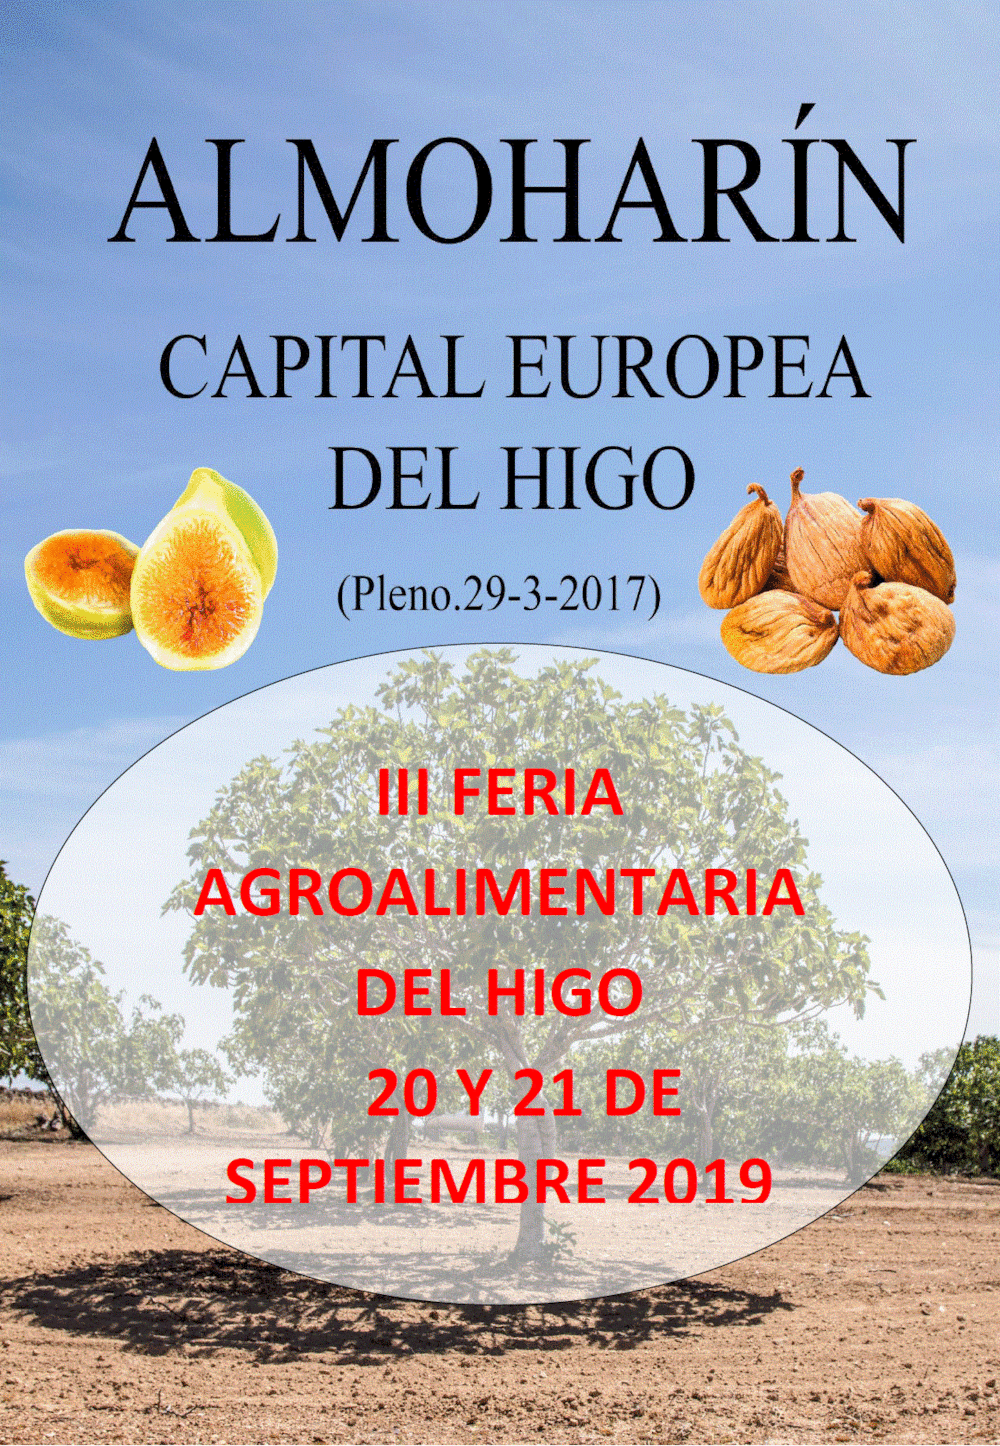 La III Feria Agroalimentaria del Higo destacará a Almoharín como líder del sector productor